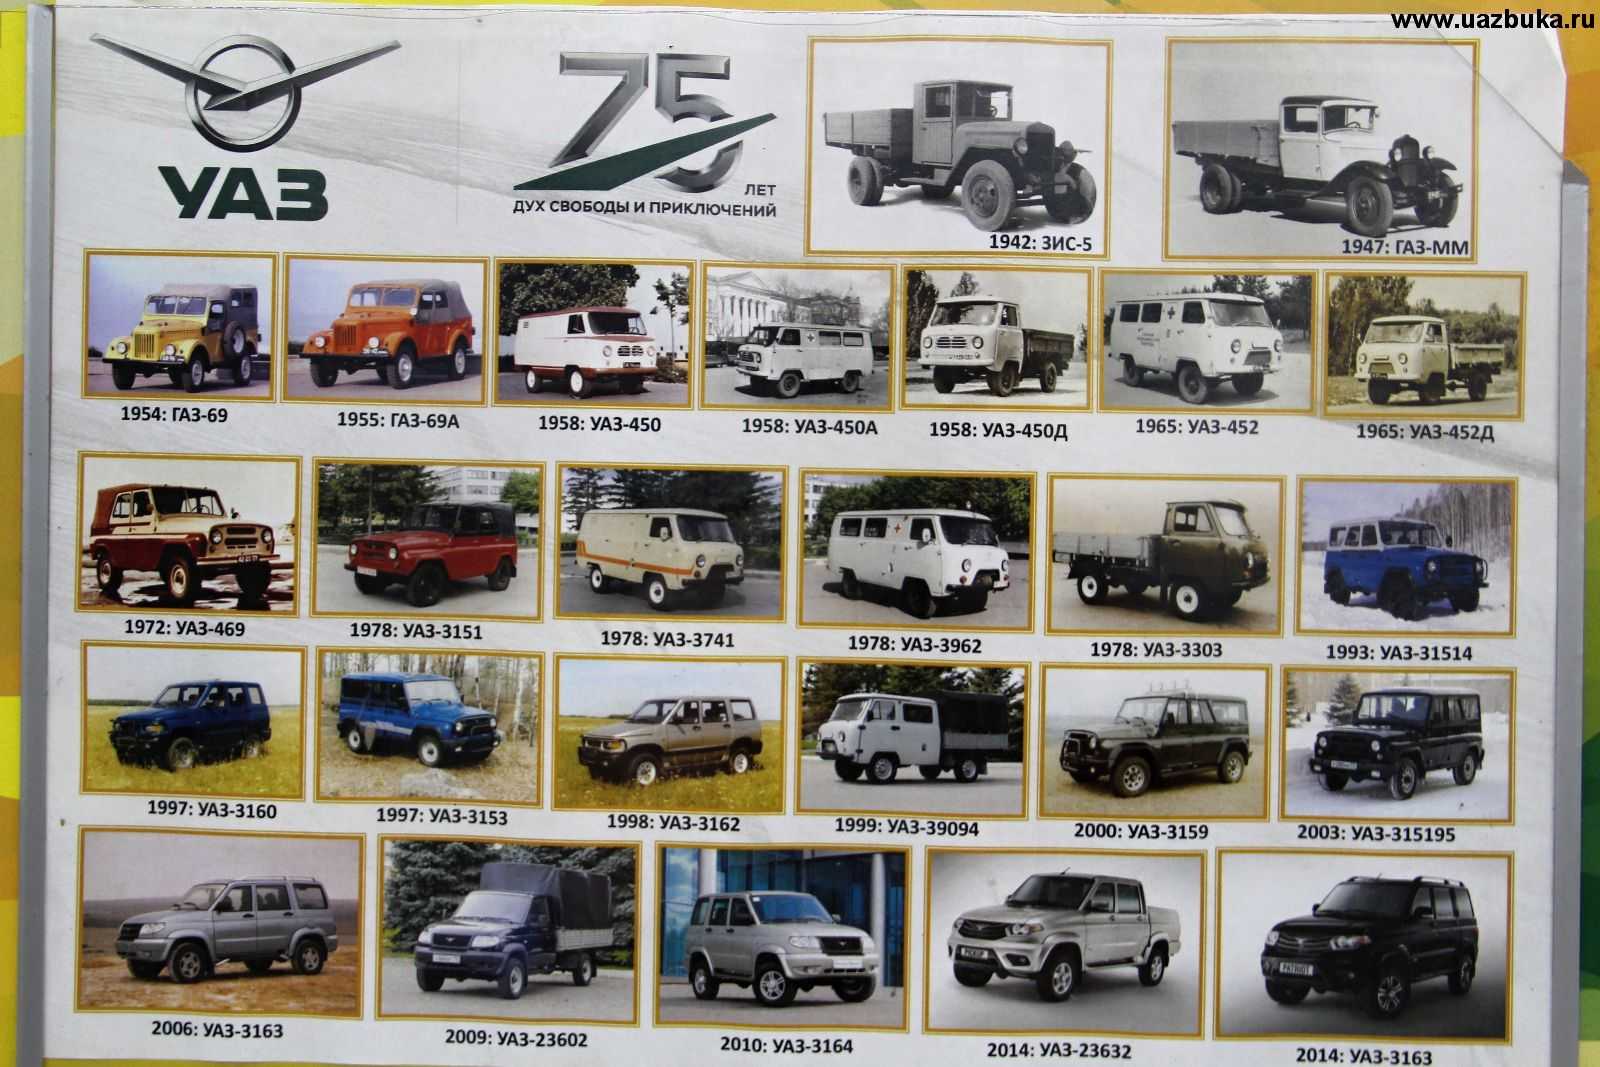 История бренда УАЗ, логотип Ульяновского атвозавода, модельный ряд УАЗ История автомобильной марки, популярные авто